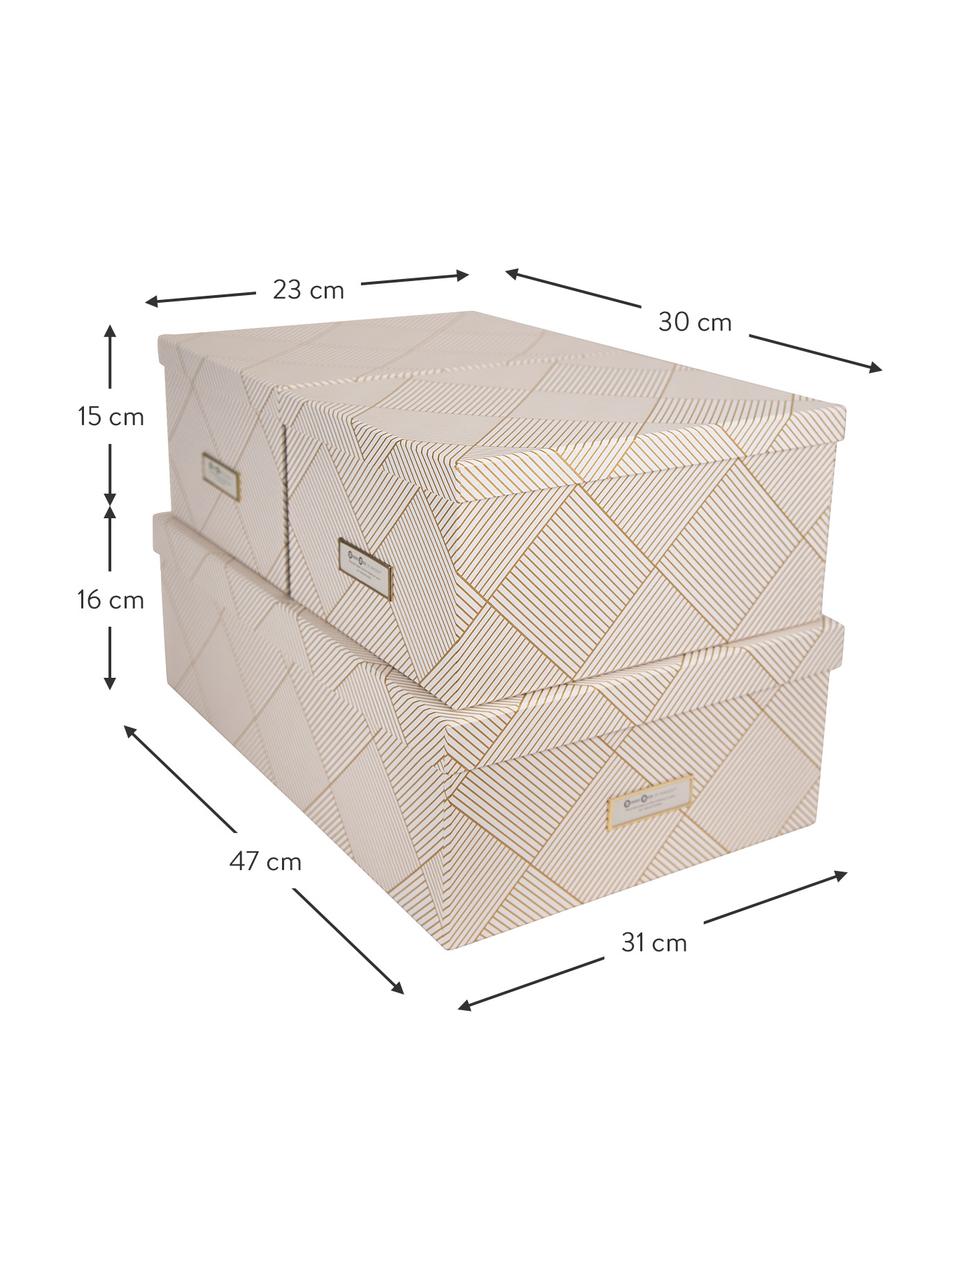 Aufbewahrungsboxen-Set Inge, 3-tlg., Box: Fester, laminierter Karto, Goldfarben, Weiß, Set mit verschiedenen Größen